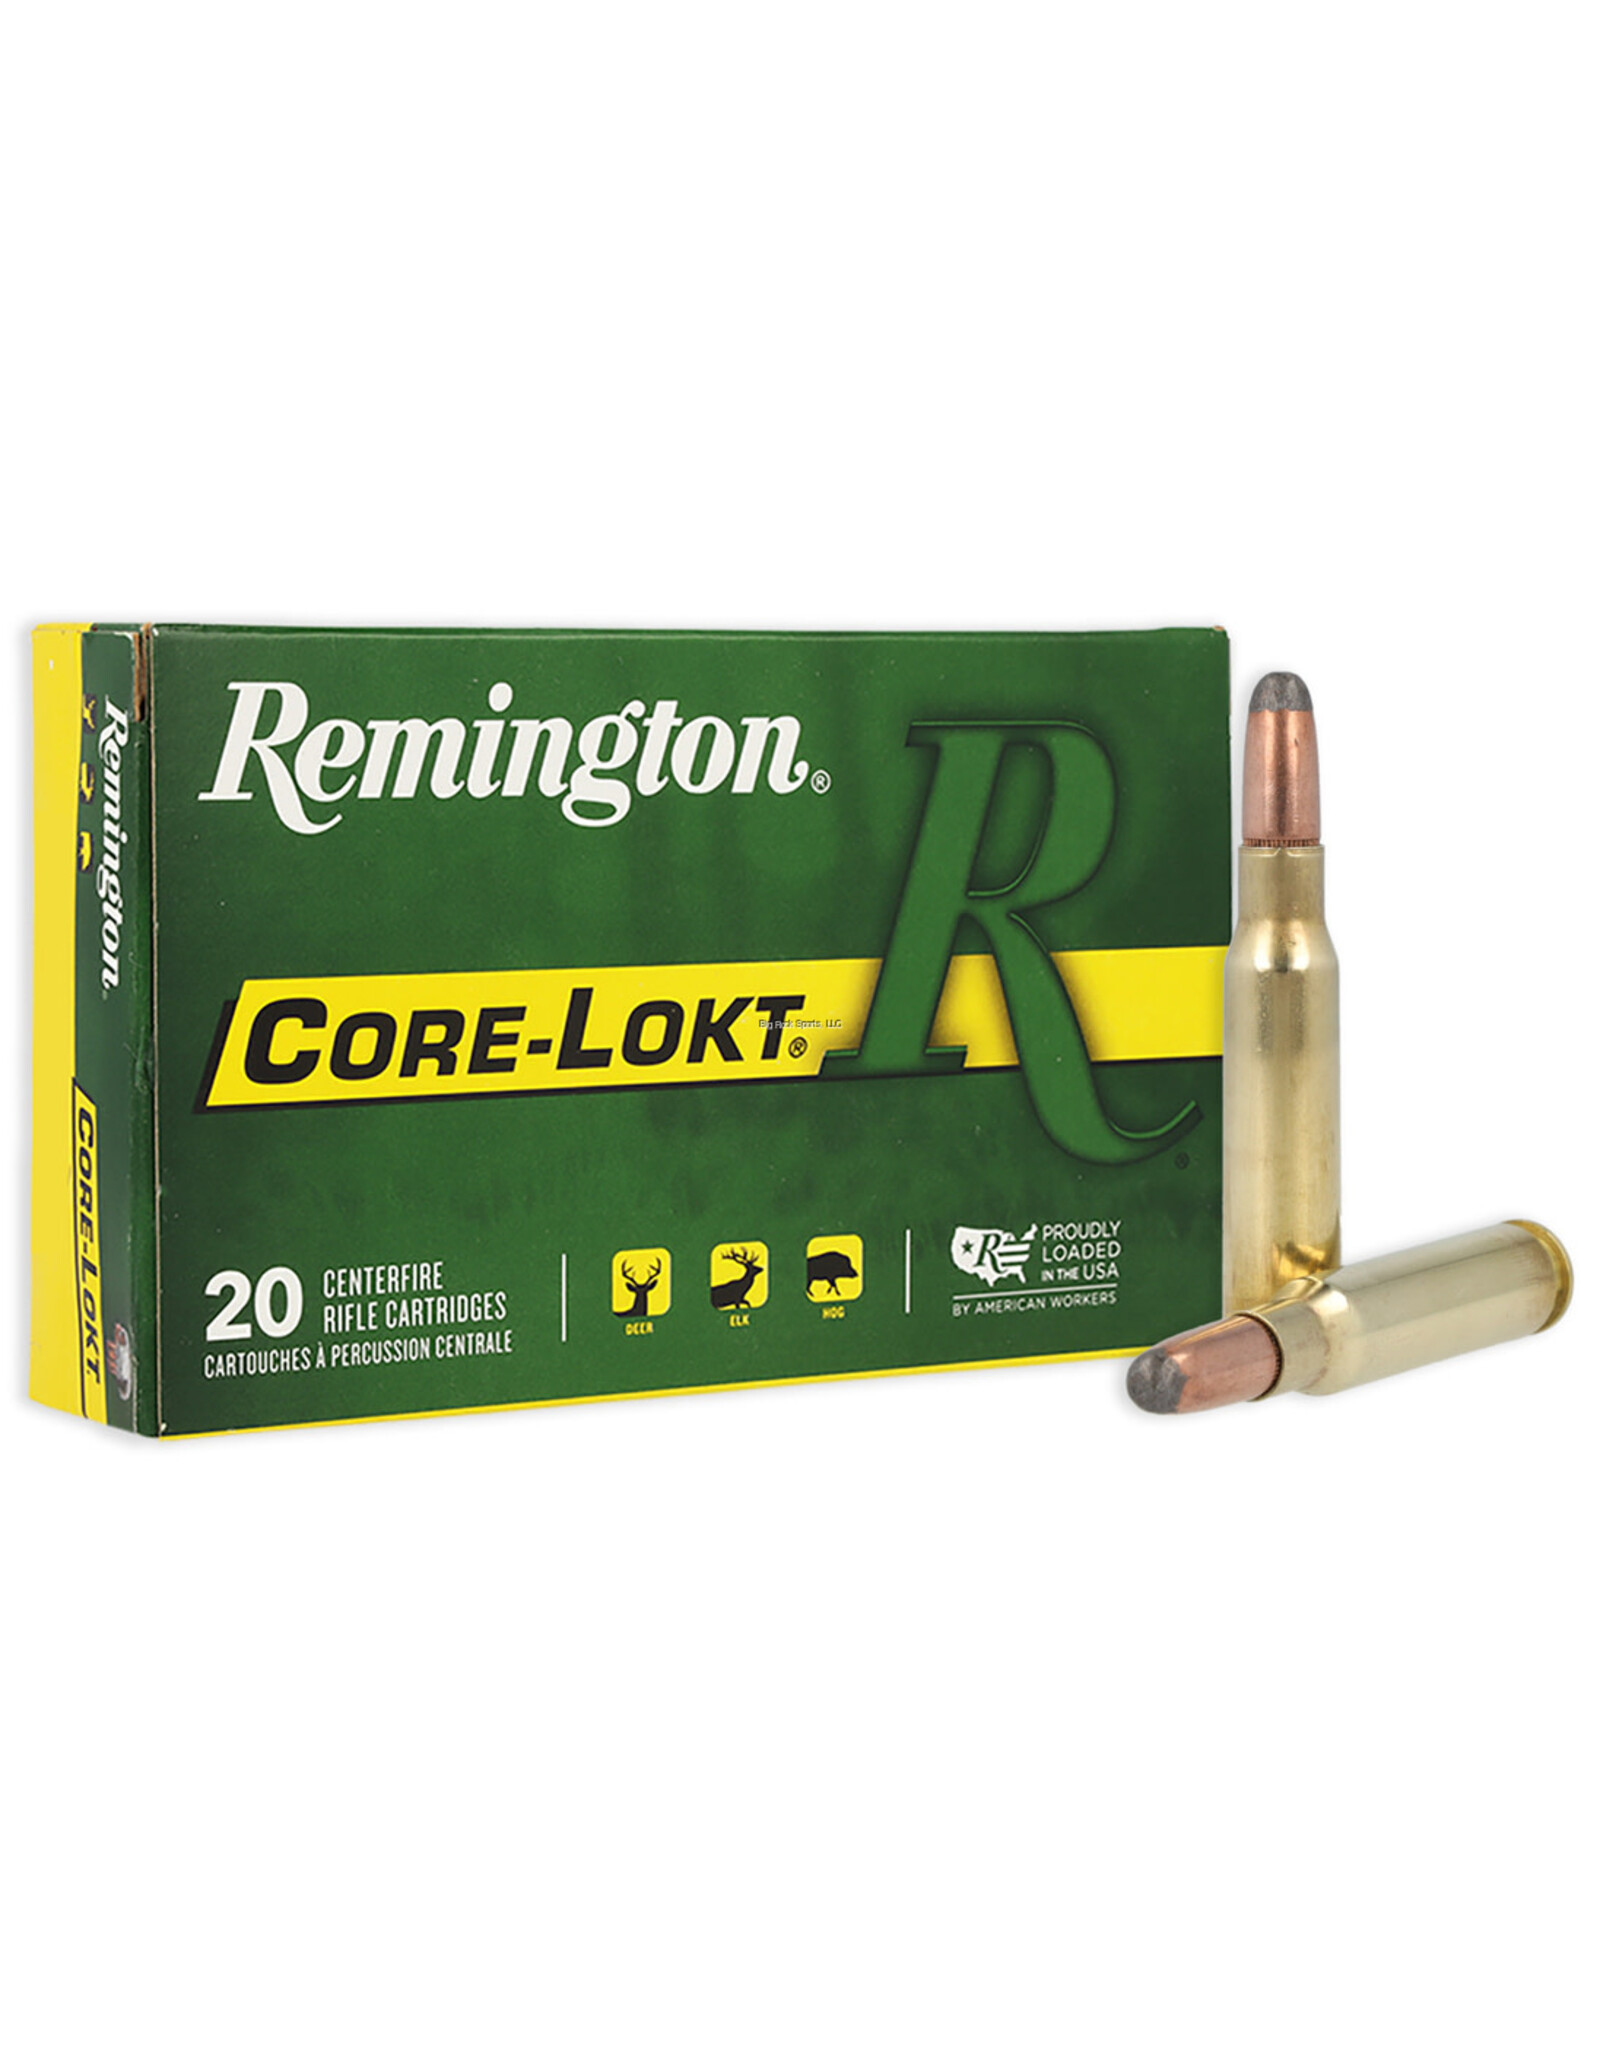 Remington Remington 27844 Core-Lokt Rifle Ammo 308 WIN, SP, 180 Grains, 2620 fps, 20, Boxed